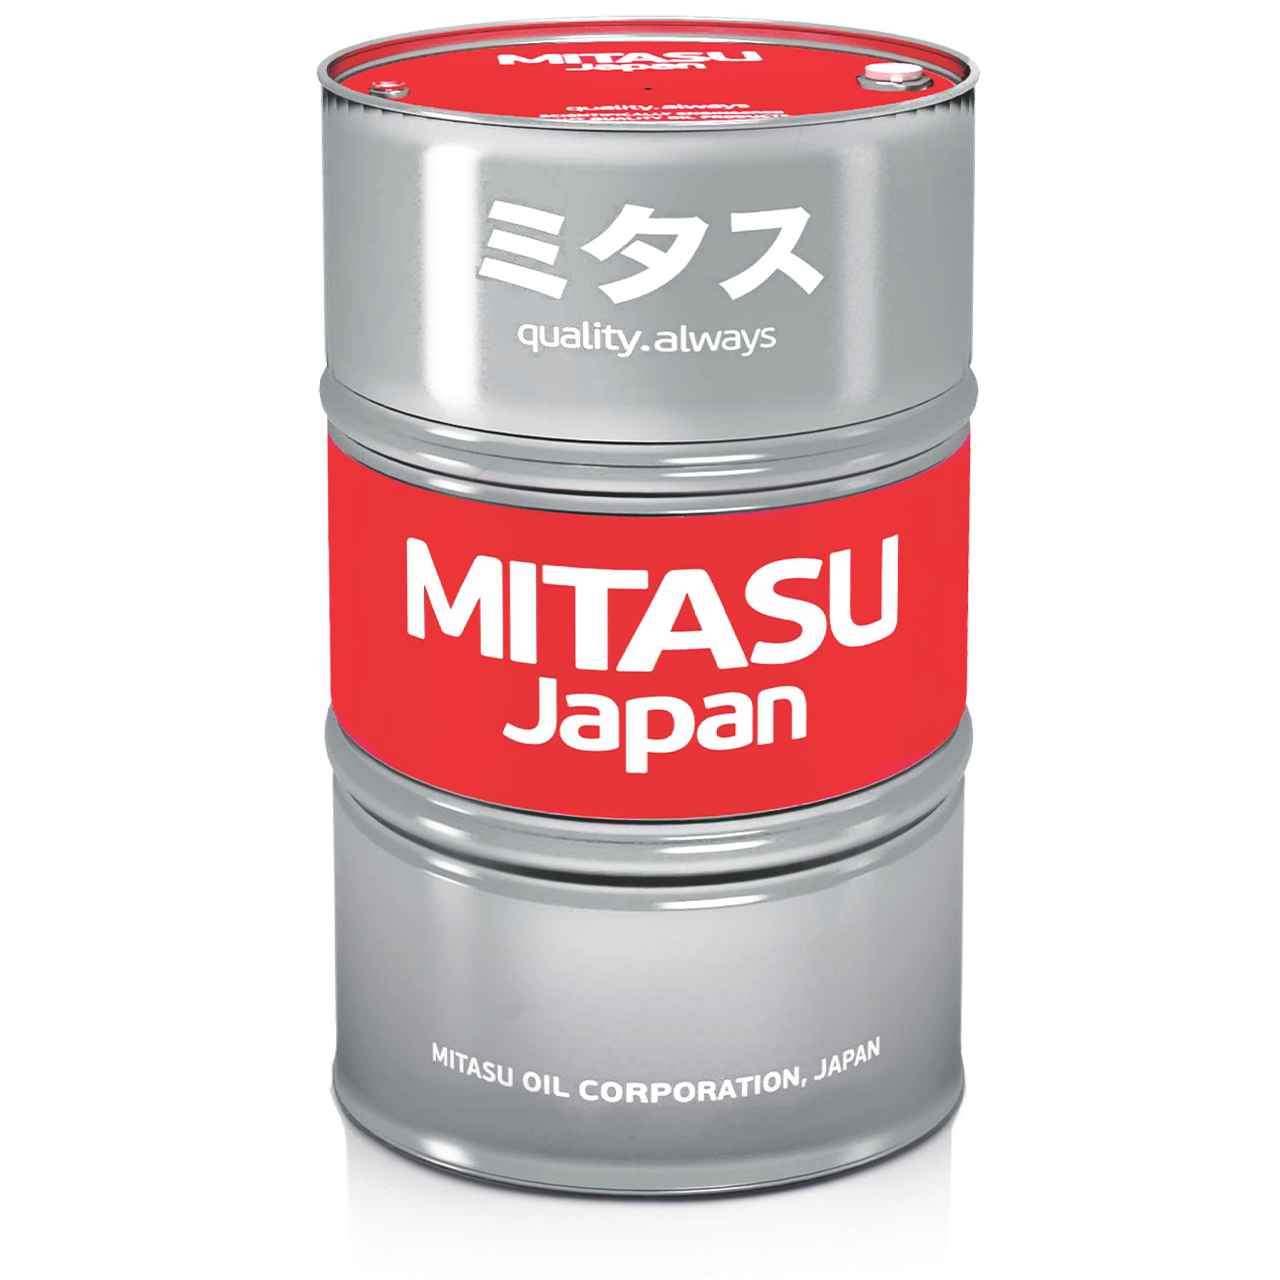 Купить запчасть MITASU - MJ731200 Жидкость промывочная MITASU универсальная 200л MJ731 Япония